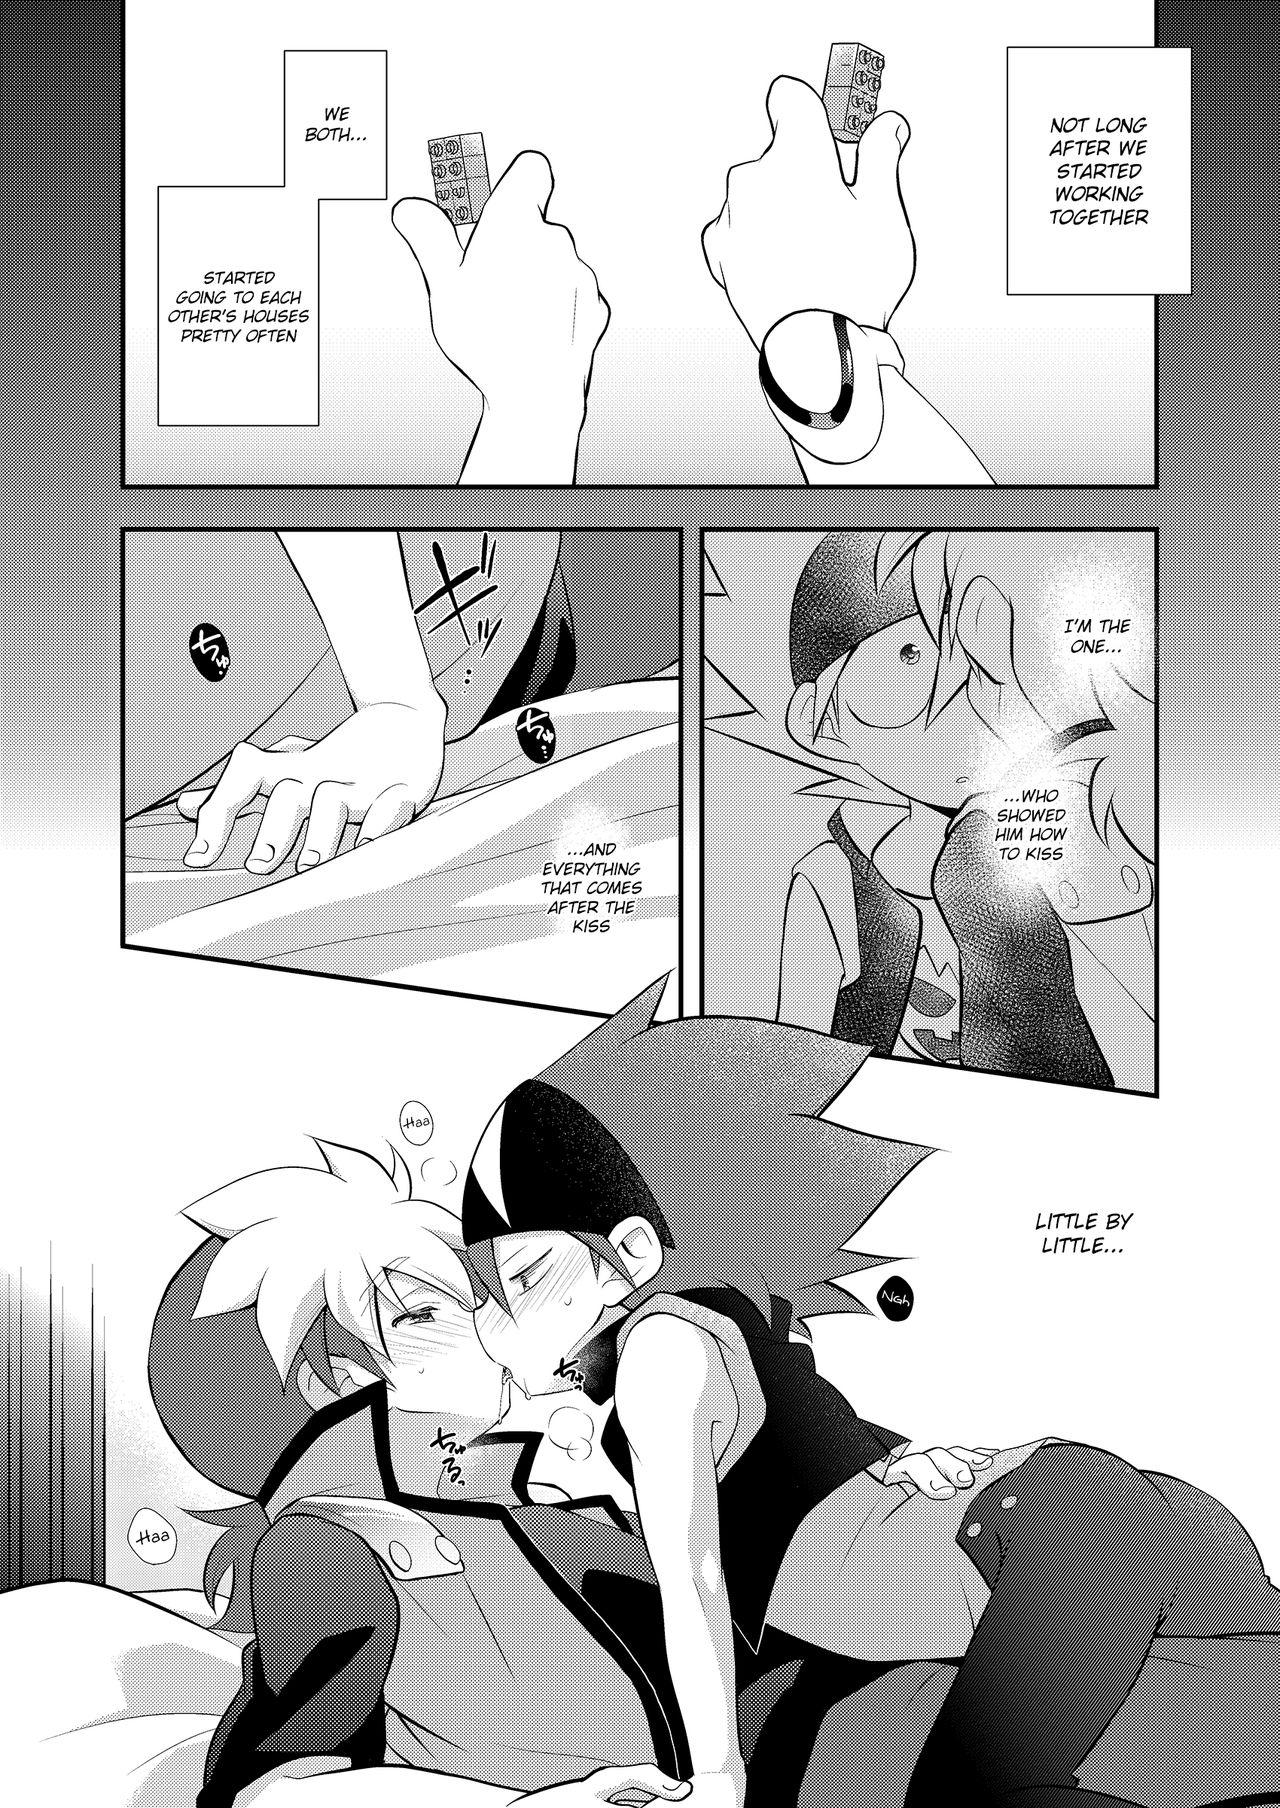 Coeds CHU CHO COM - Tenkai knights Kiss - Page 8